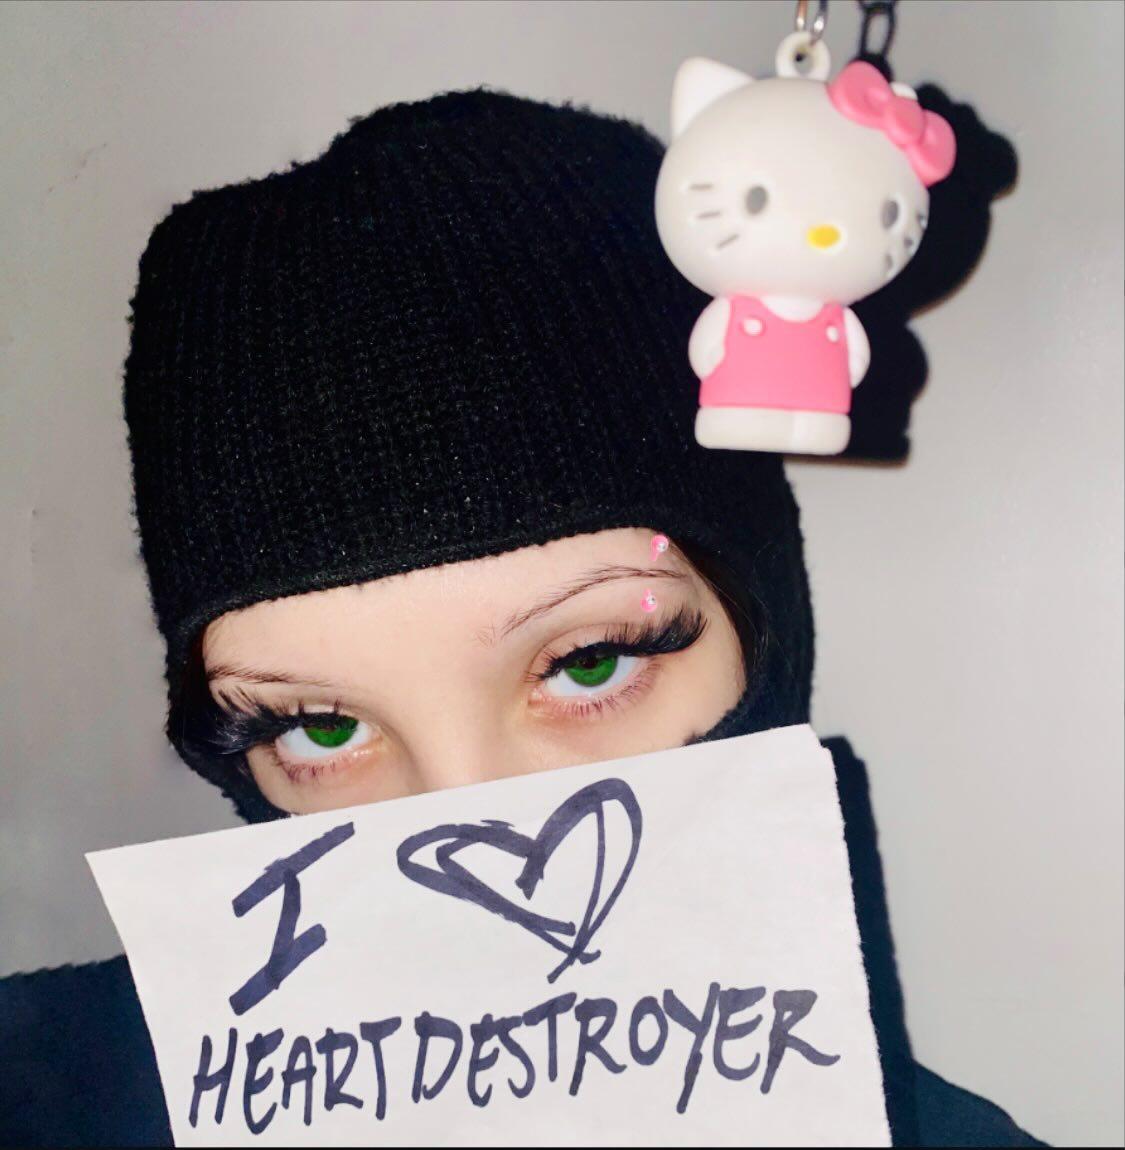 Heartdestroyer - ‘Hello Kitty Bitches’